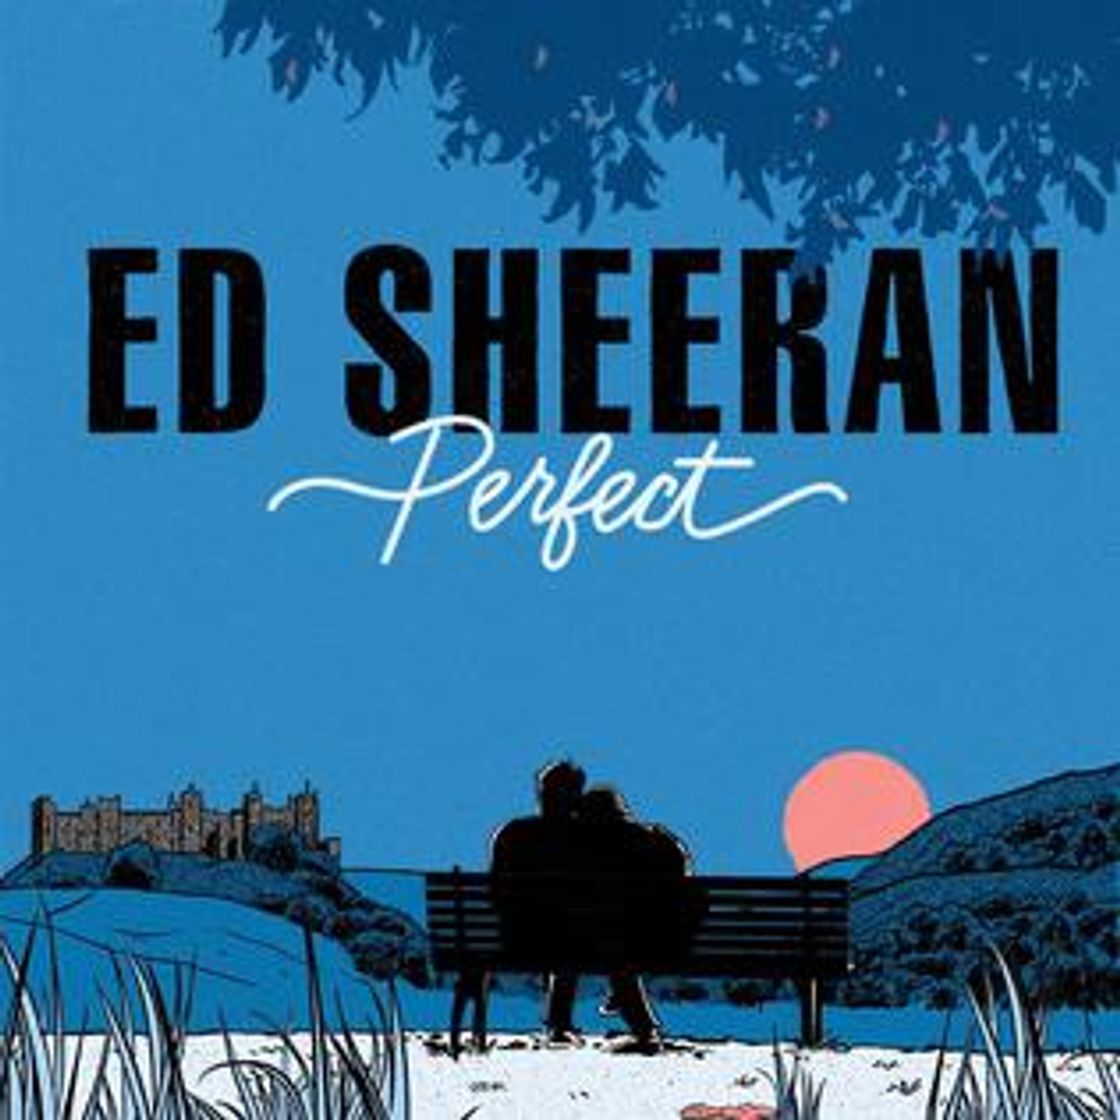 Perfect- Ed Sheeran 